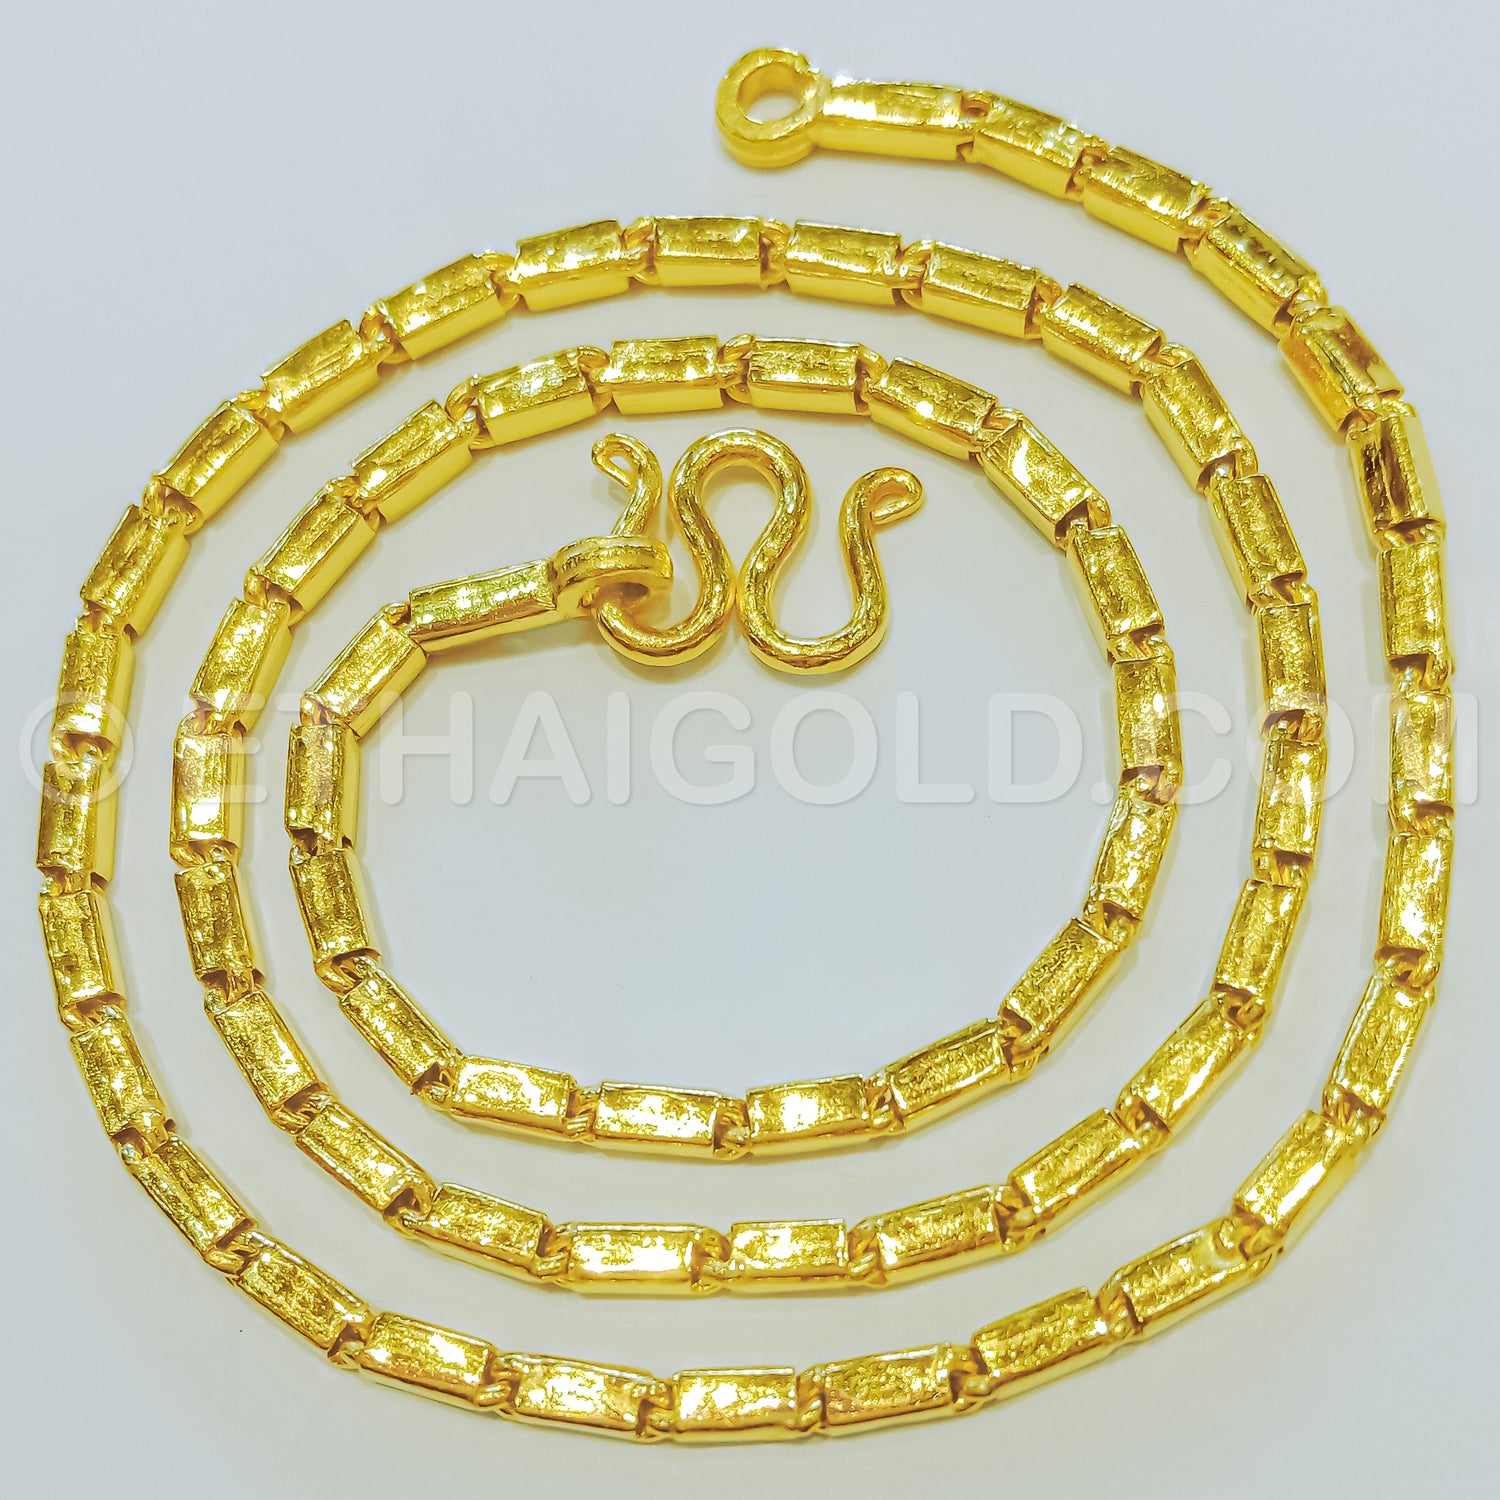 Thai Gold Jewelry Bracelet Bangle Sukhothai Style India | Ubuy